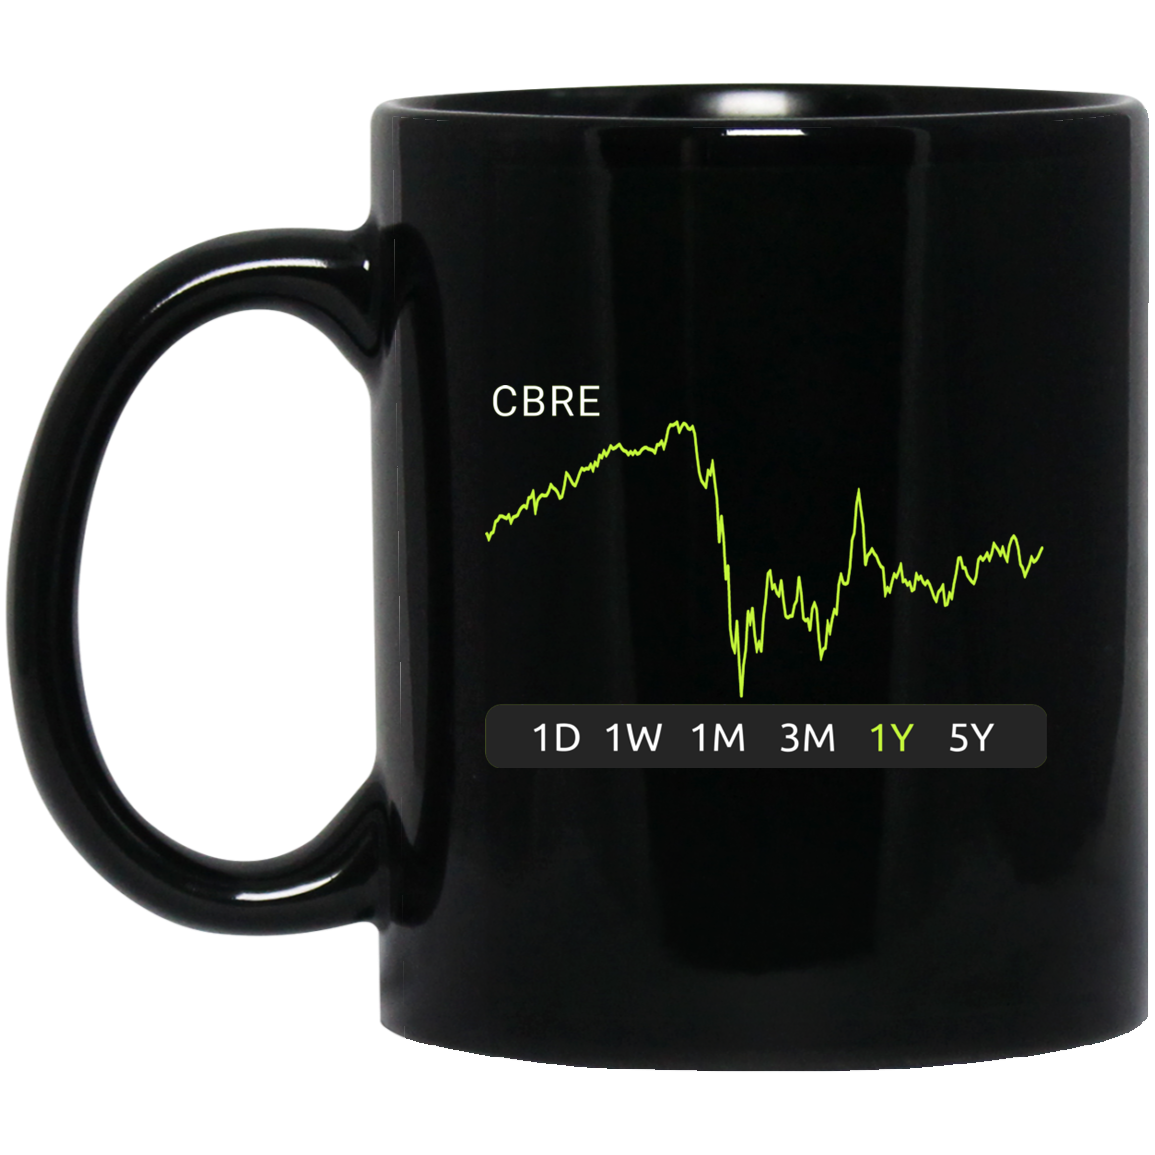 CBRE Stock 1y Mug